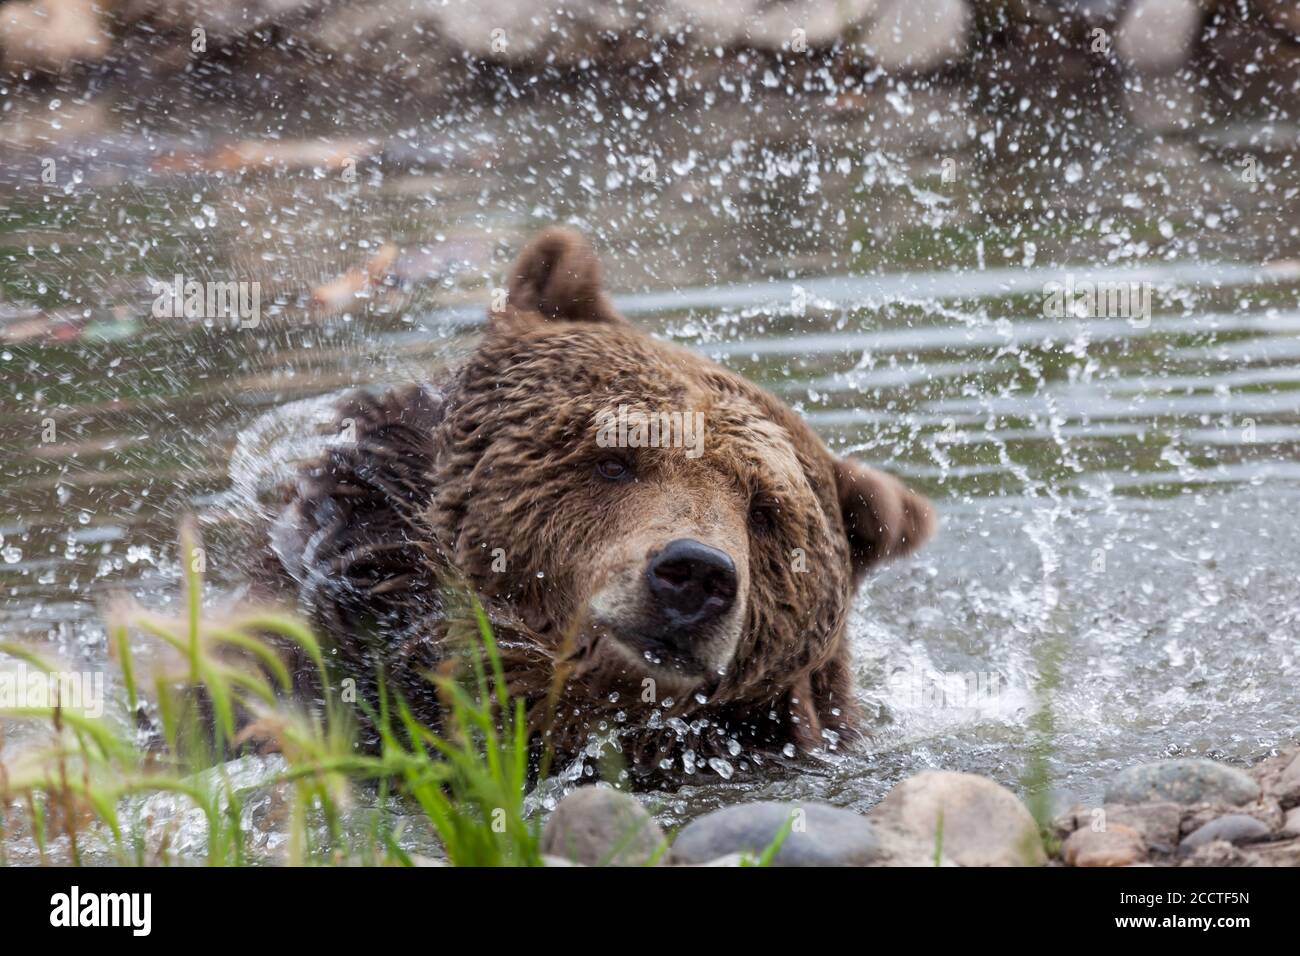 Ein großer Grizzlybär schüttelt Kopf und Hals in einem Teich und sendet Wassertropfen in alle Richtungen. Stockfoto